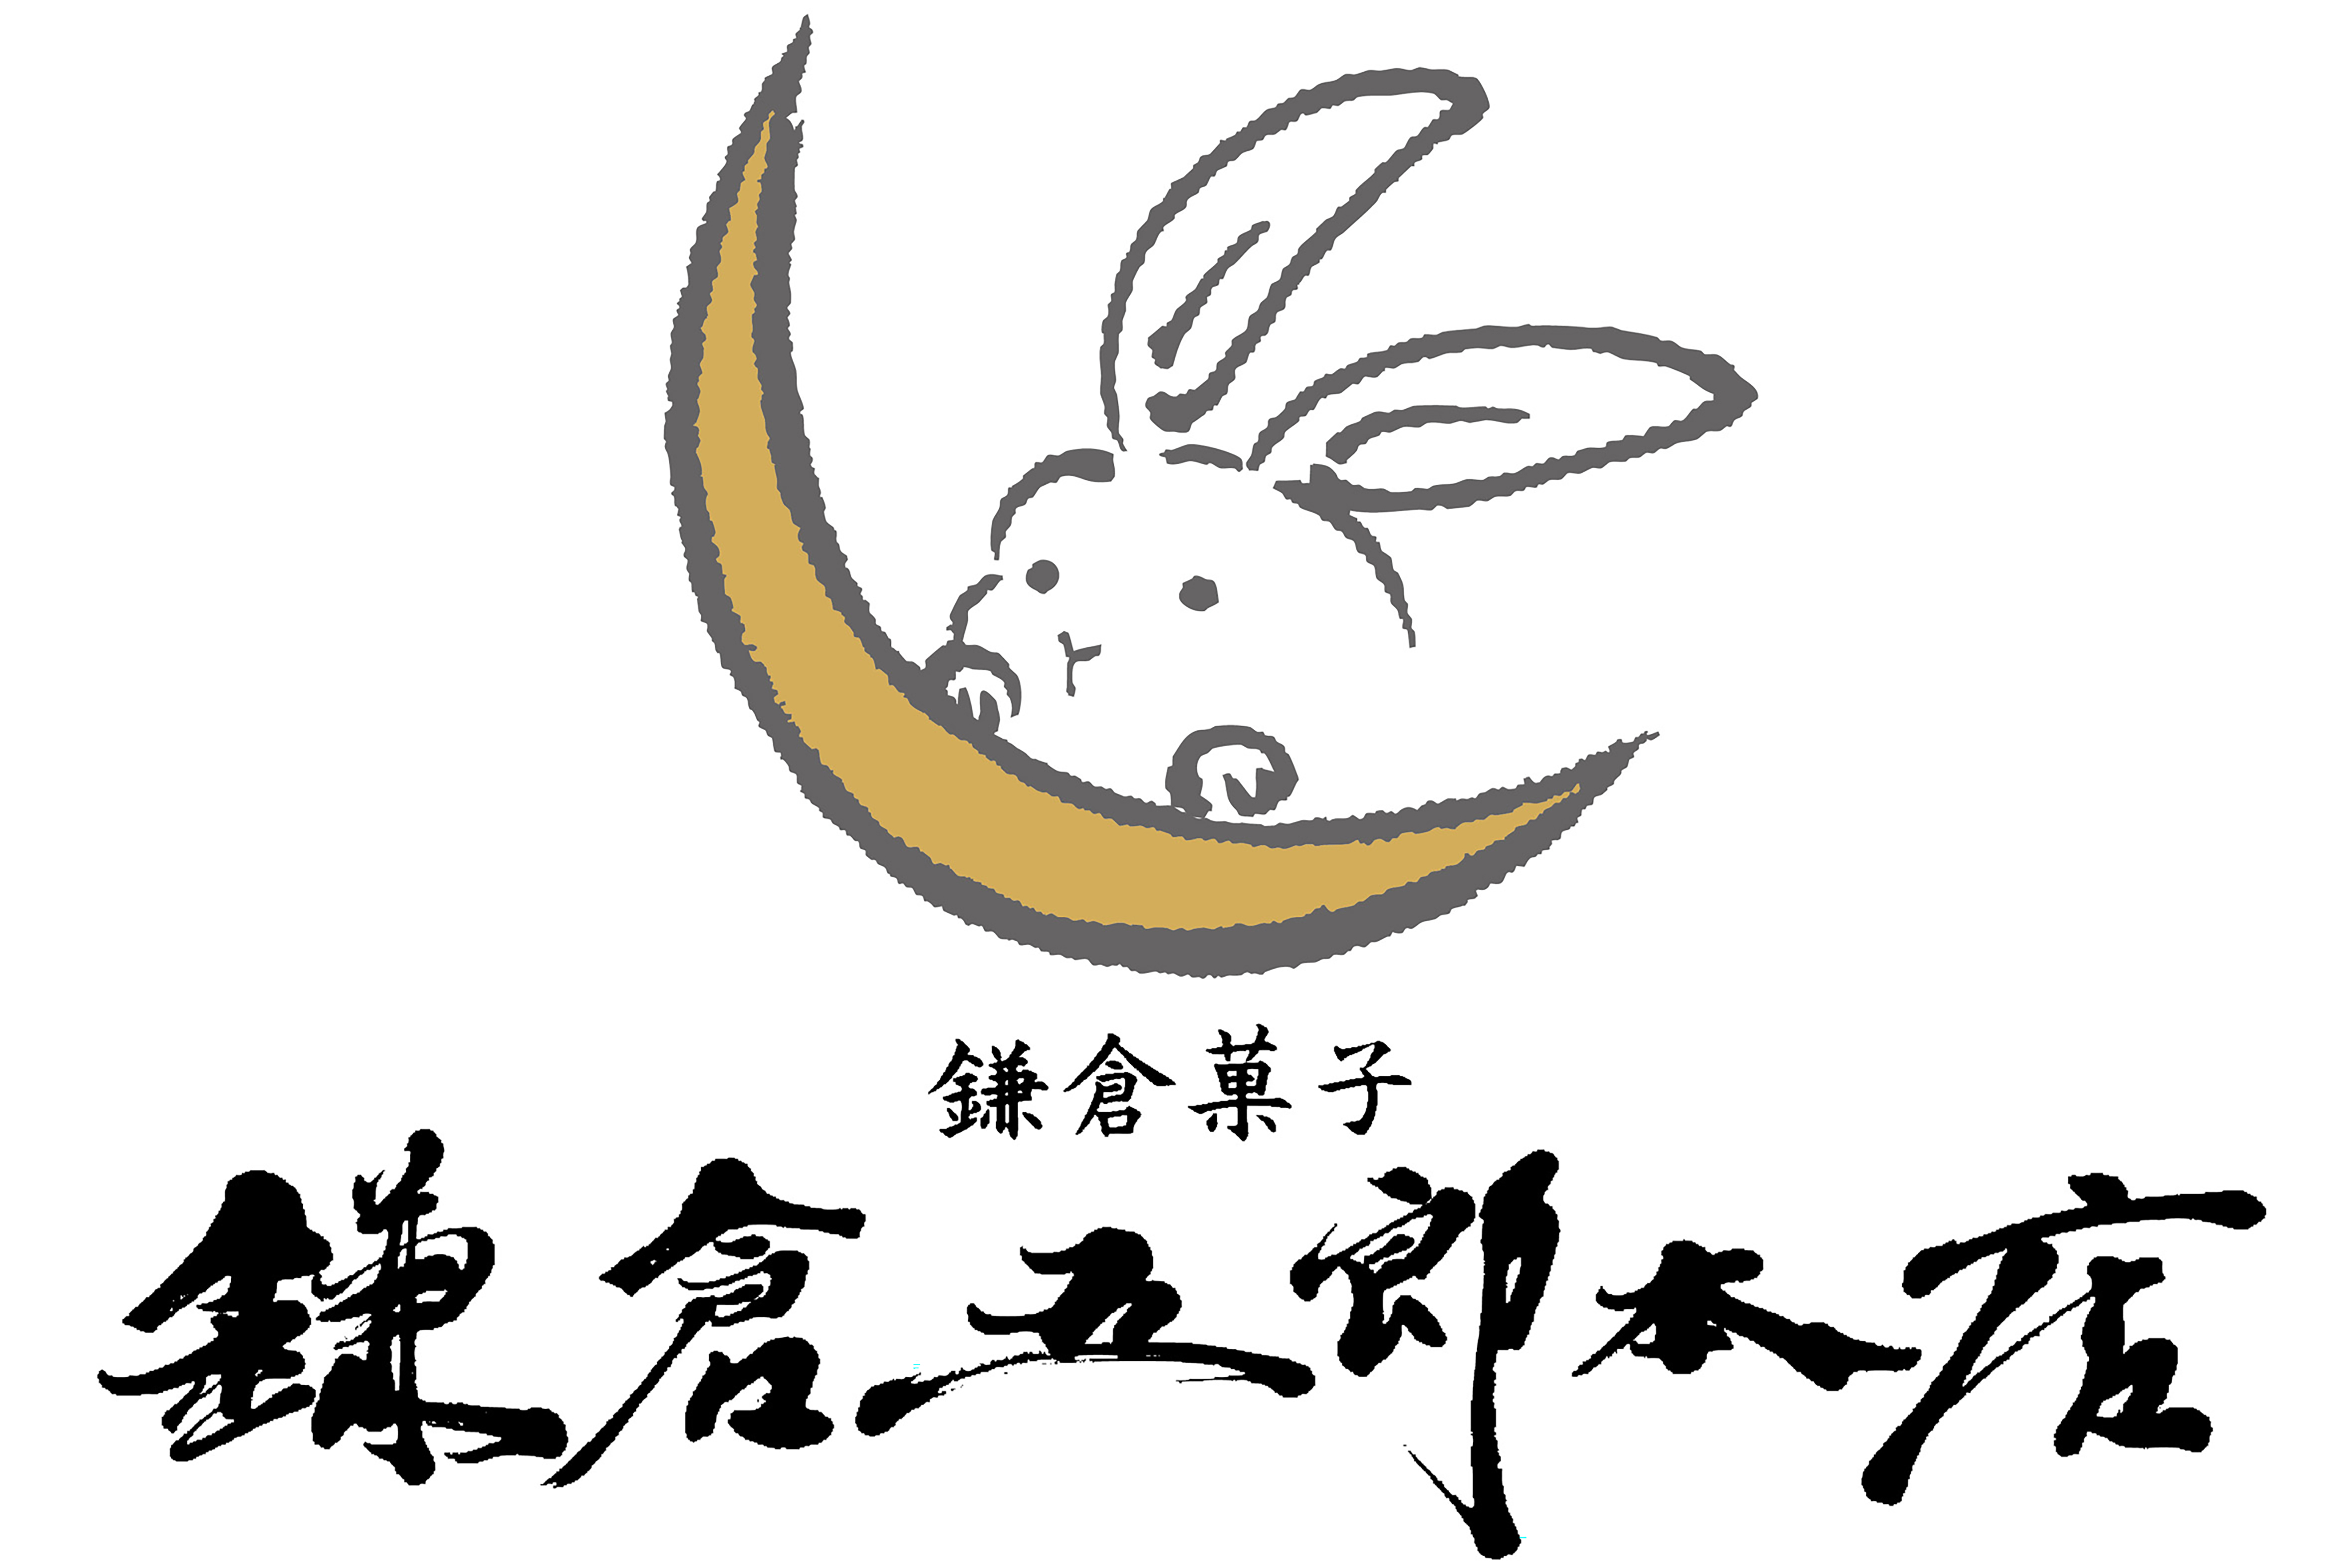 「もらって嬉しい鎌倉スイーツNo.1」の『鎌倉半月』が“おやつボックス”を発売！大正ロマンがテーマの新デザインのサブ画像5